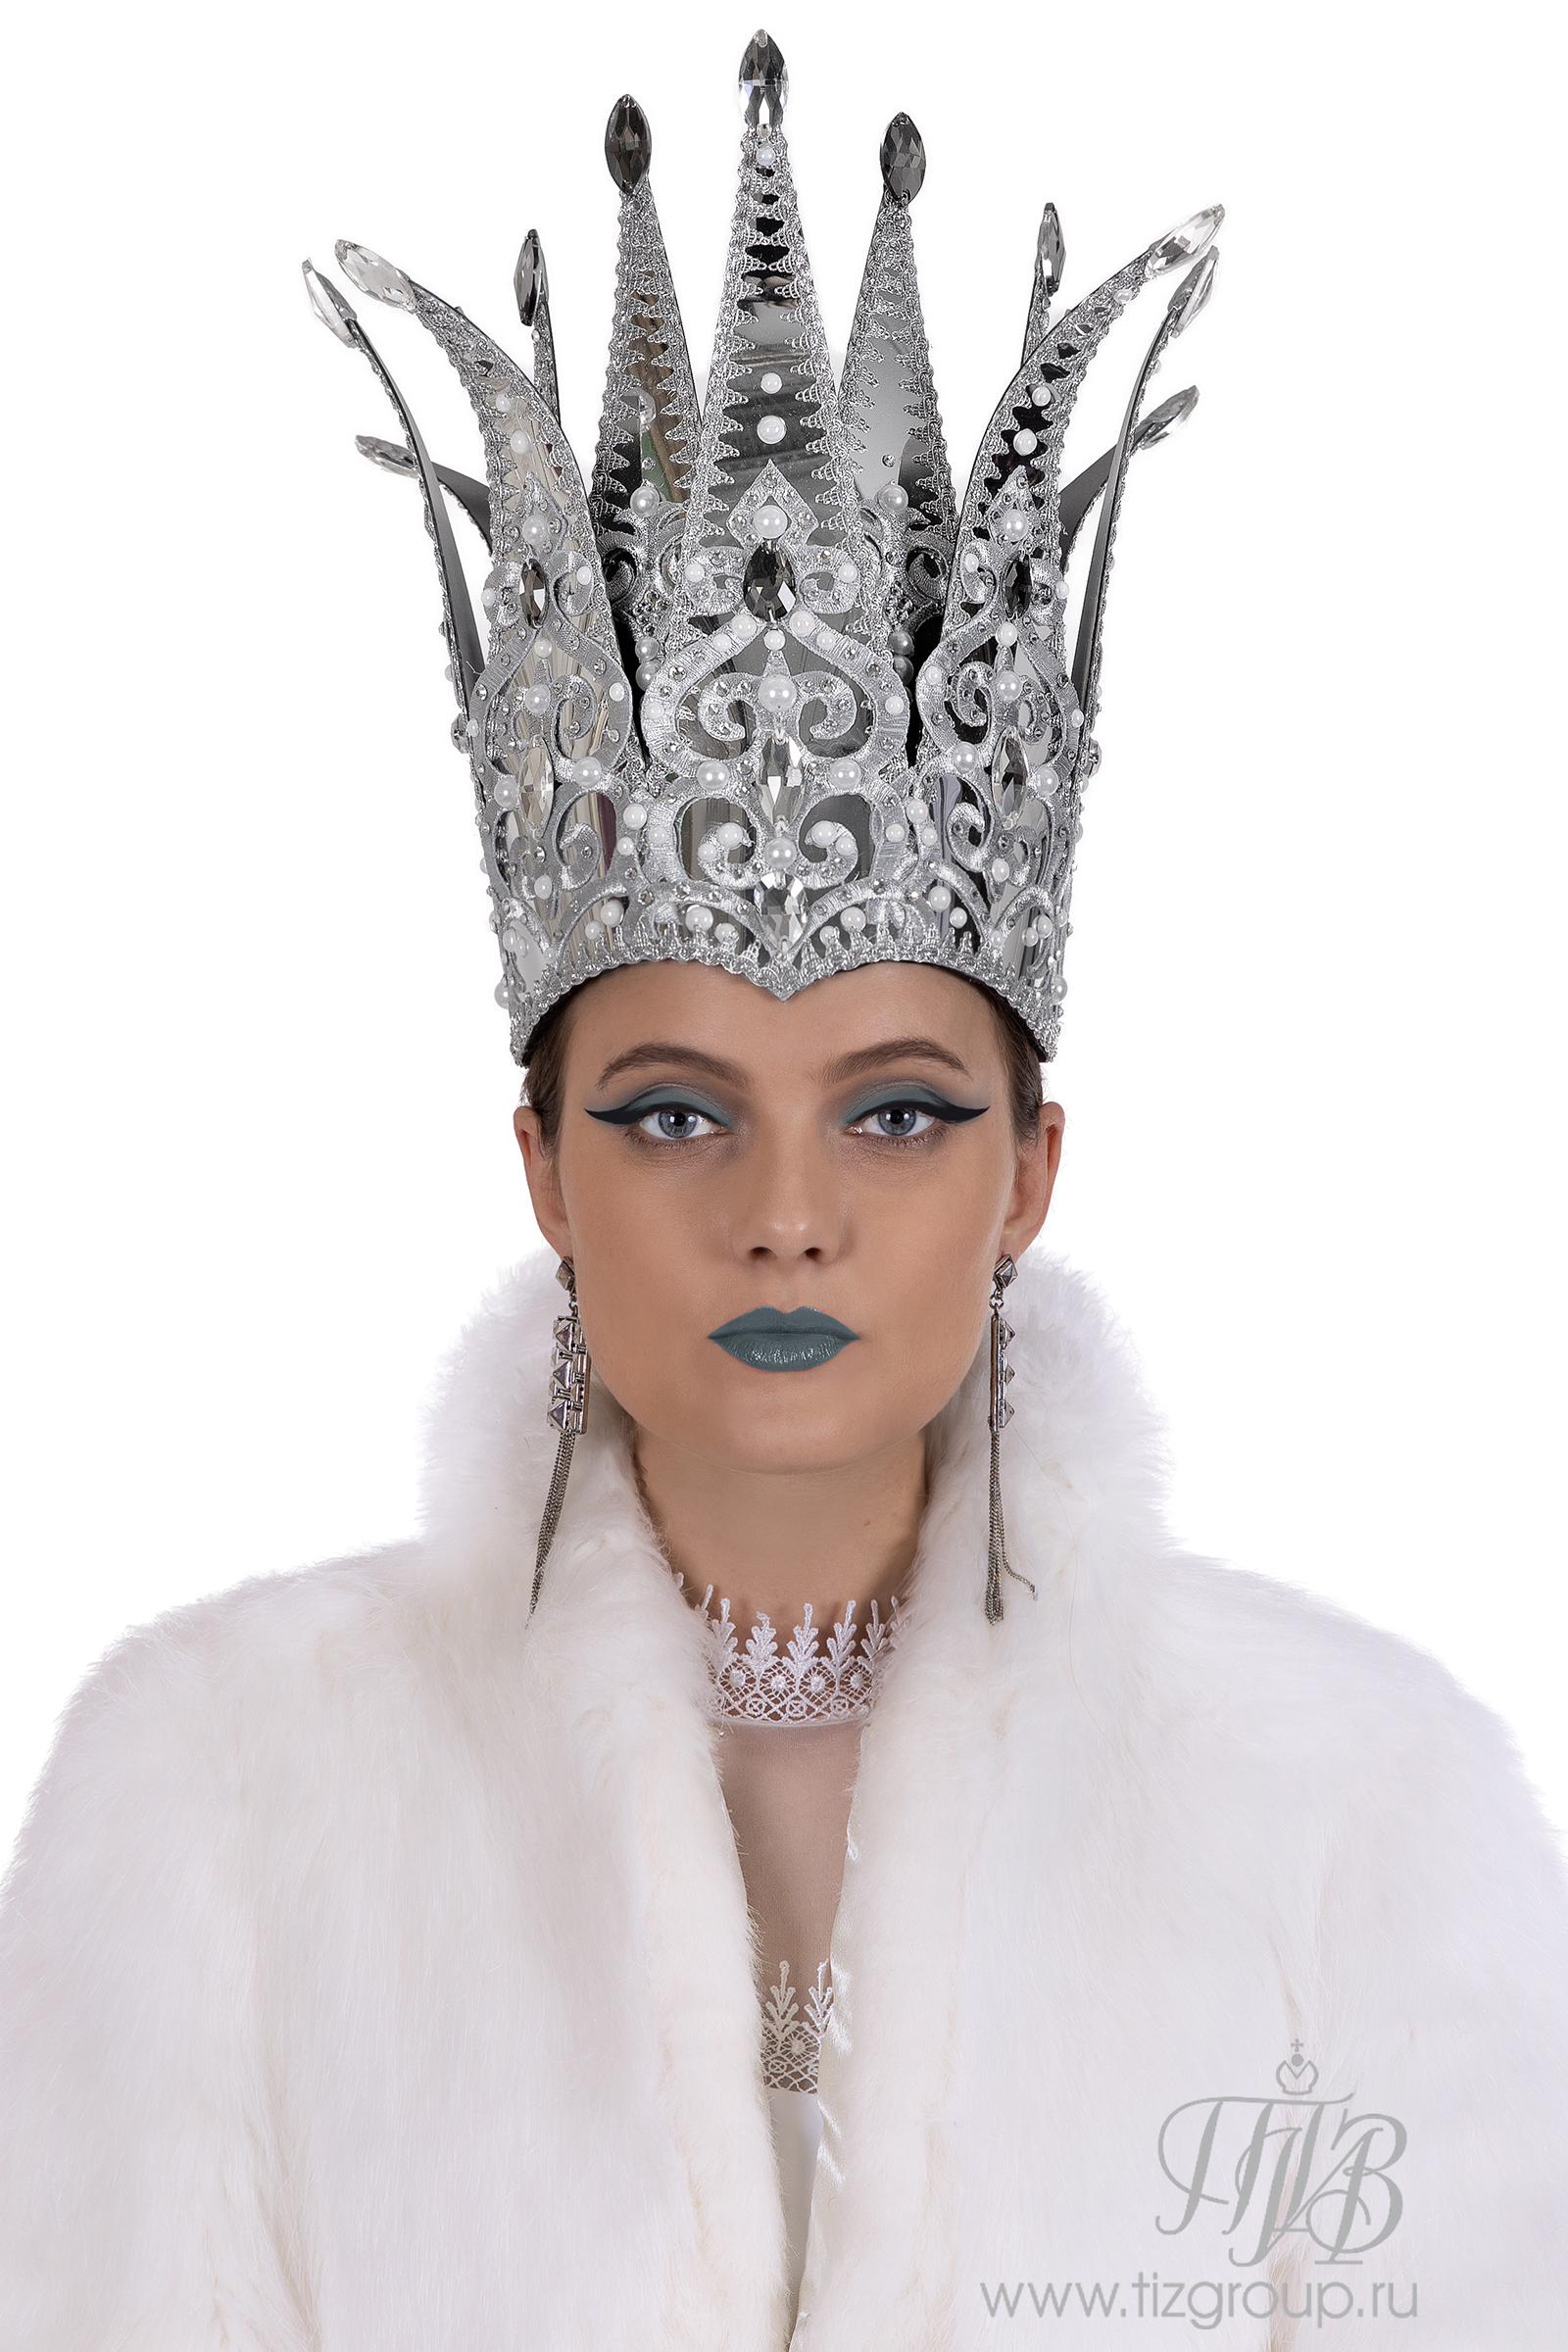 Новогодний костюм Снежной королевы